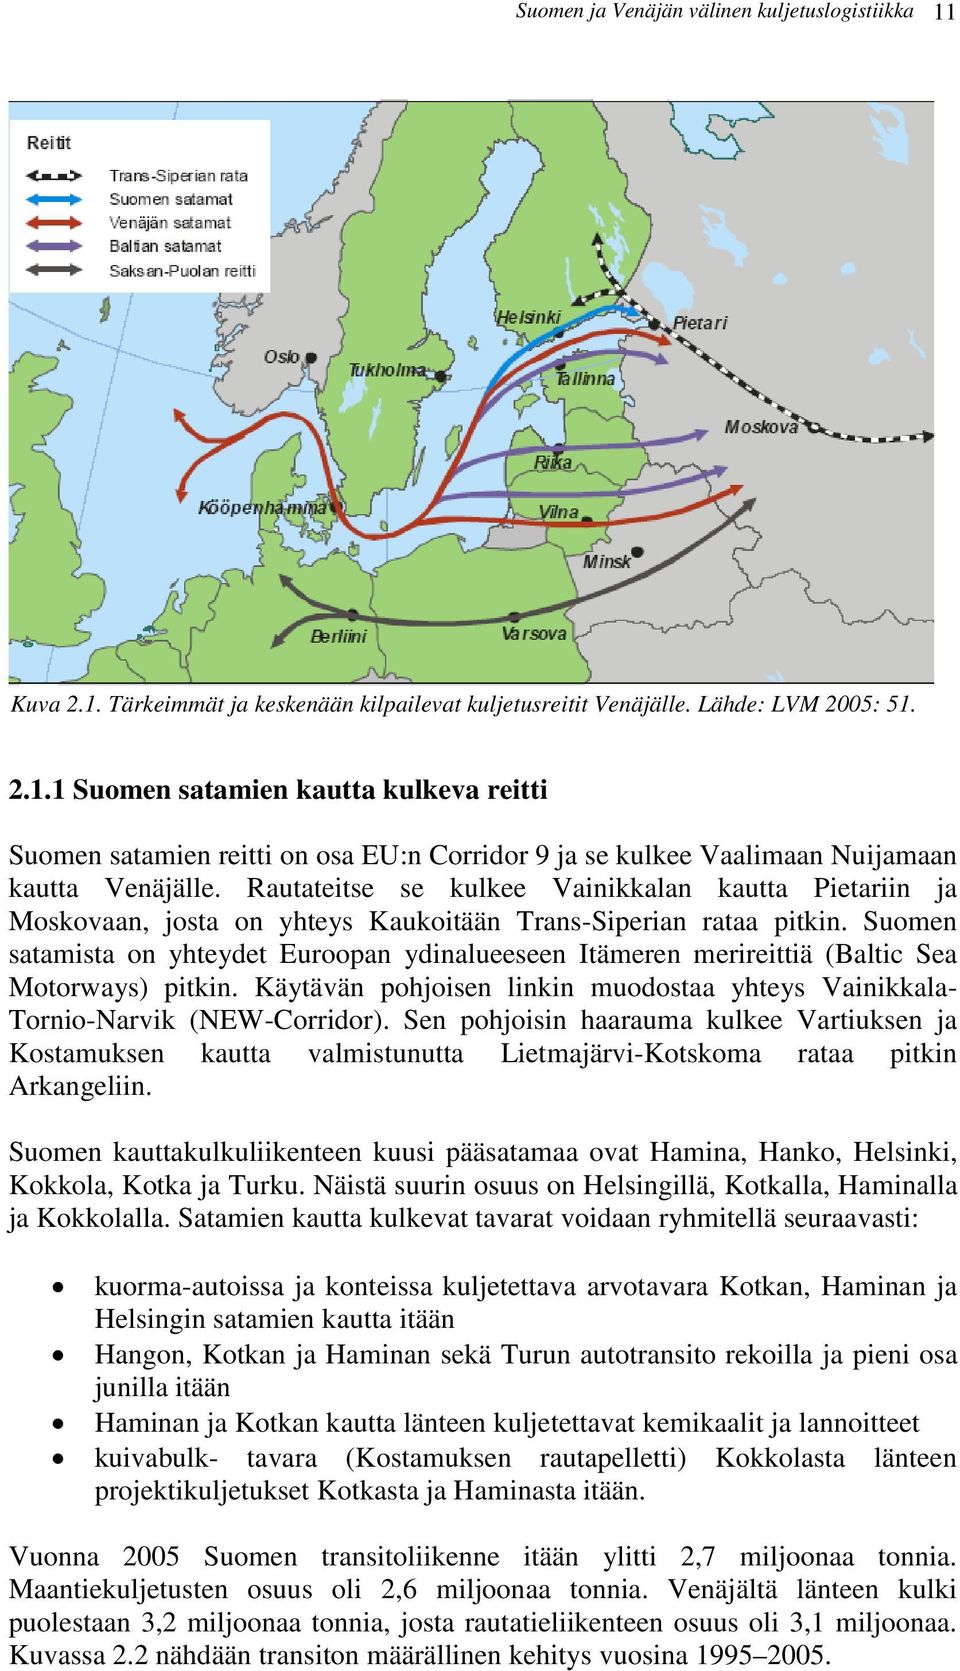 Suomen satamista on yhteydet Euroopan ydinalueeseen Itämeren merireittiä (Baltic Sea Motorways) pitkin. Käytävän pohjoisen linkin muodostaa yhteys Vainikkala- Tornio-Narvik (NEW-Corridor).